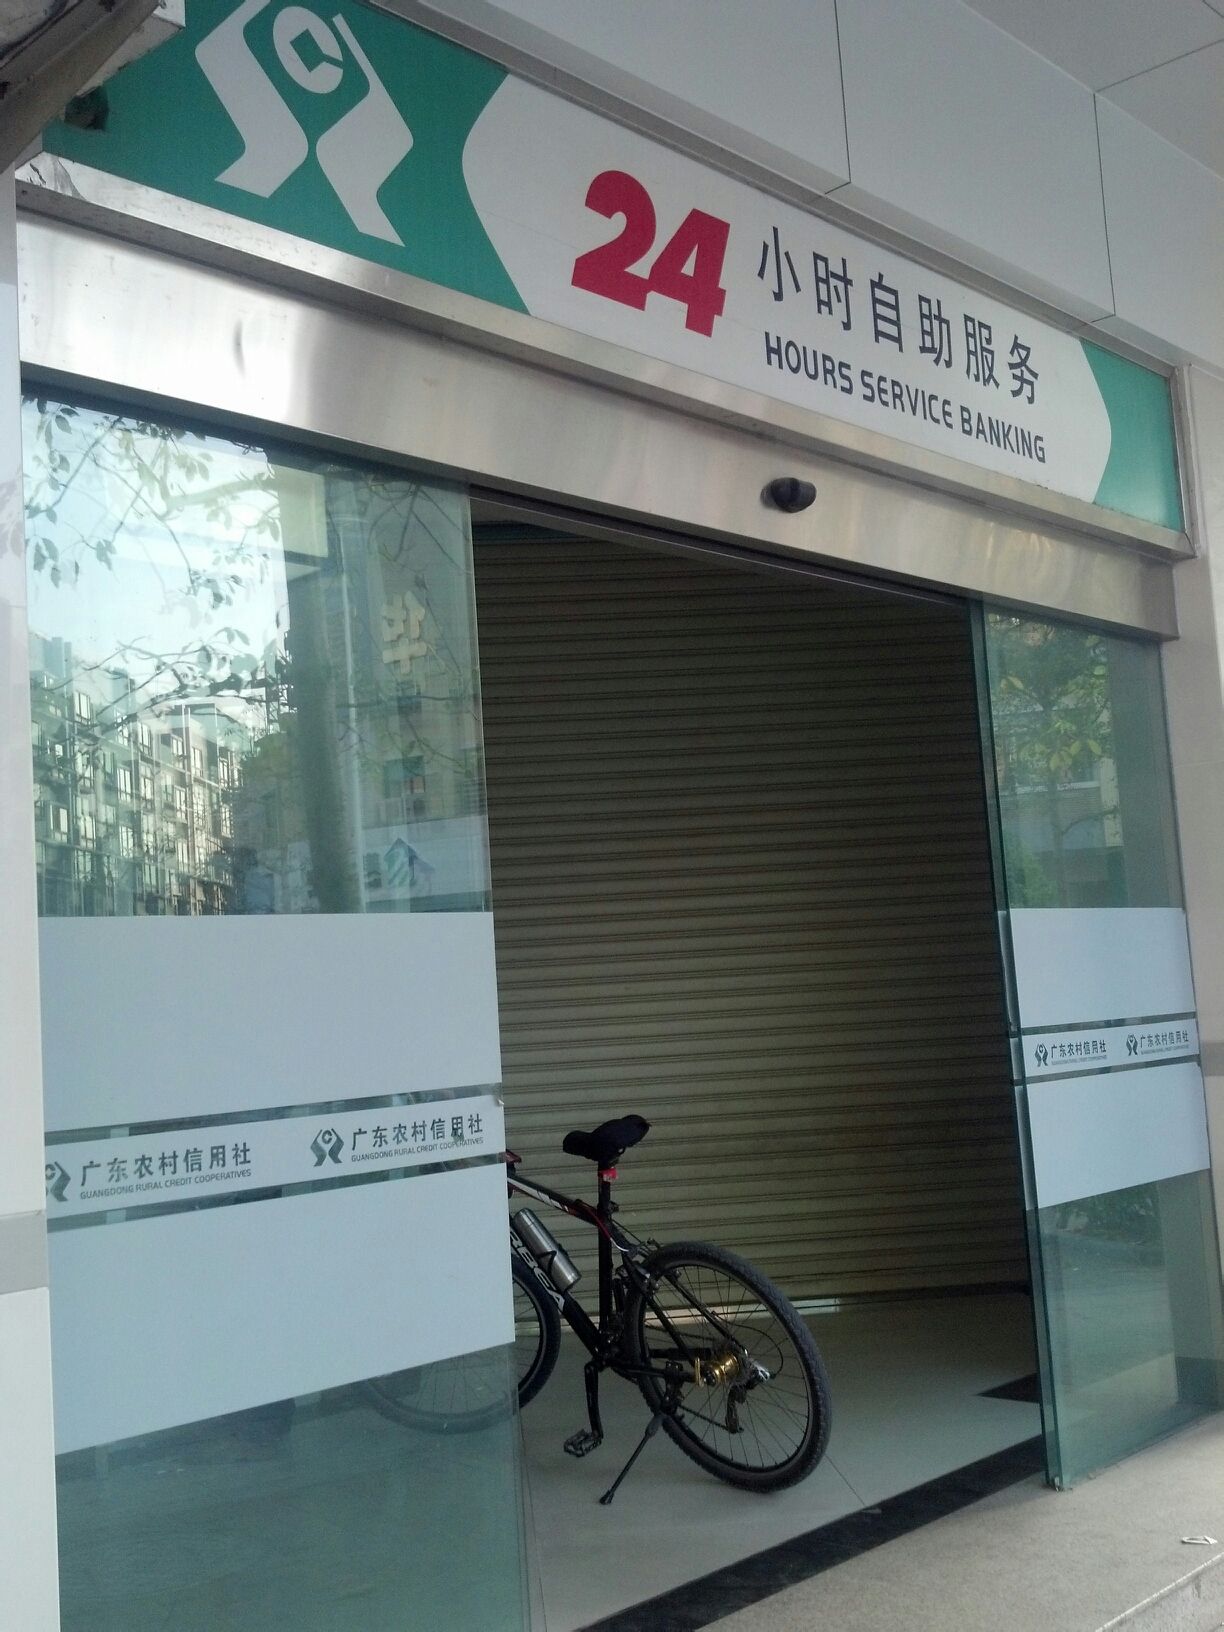 阳江农商银行24小时自助银行服务(二环支行)